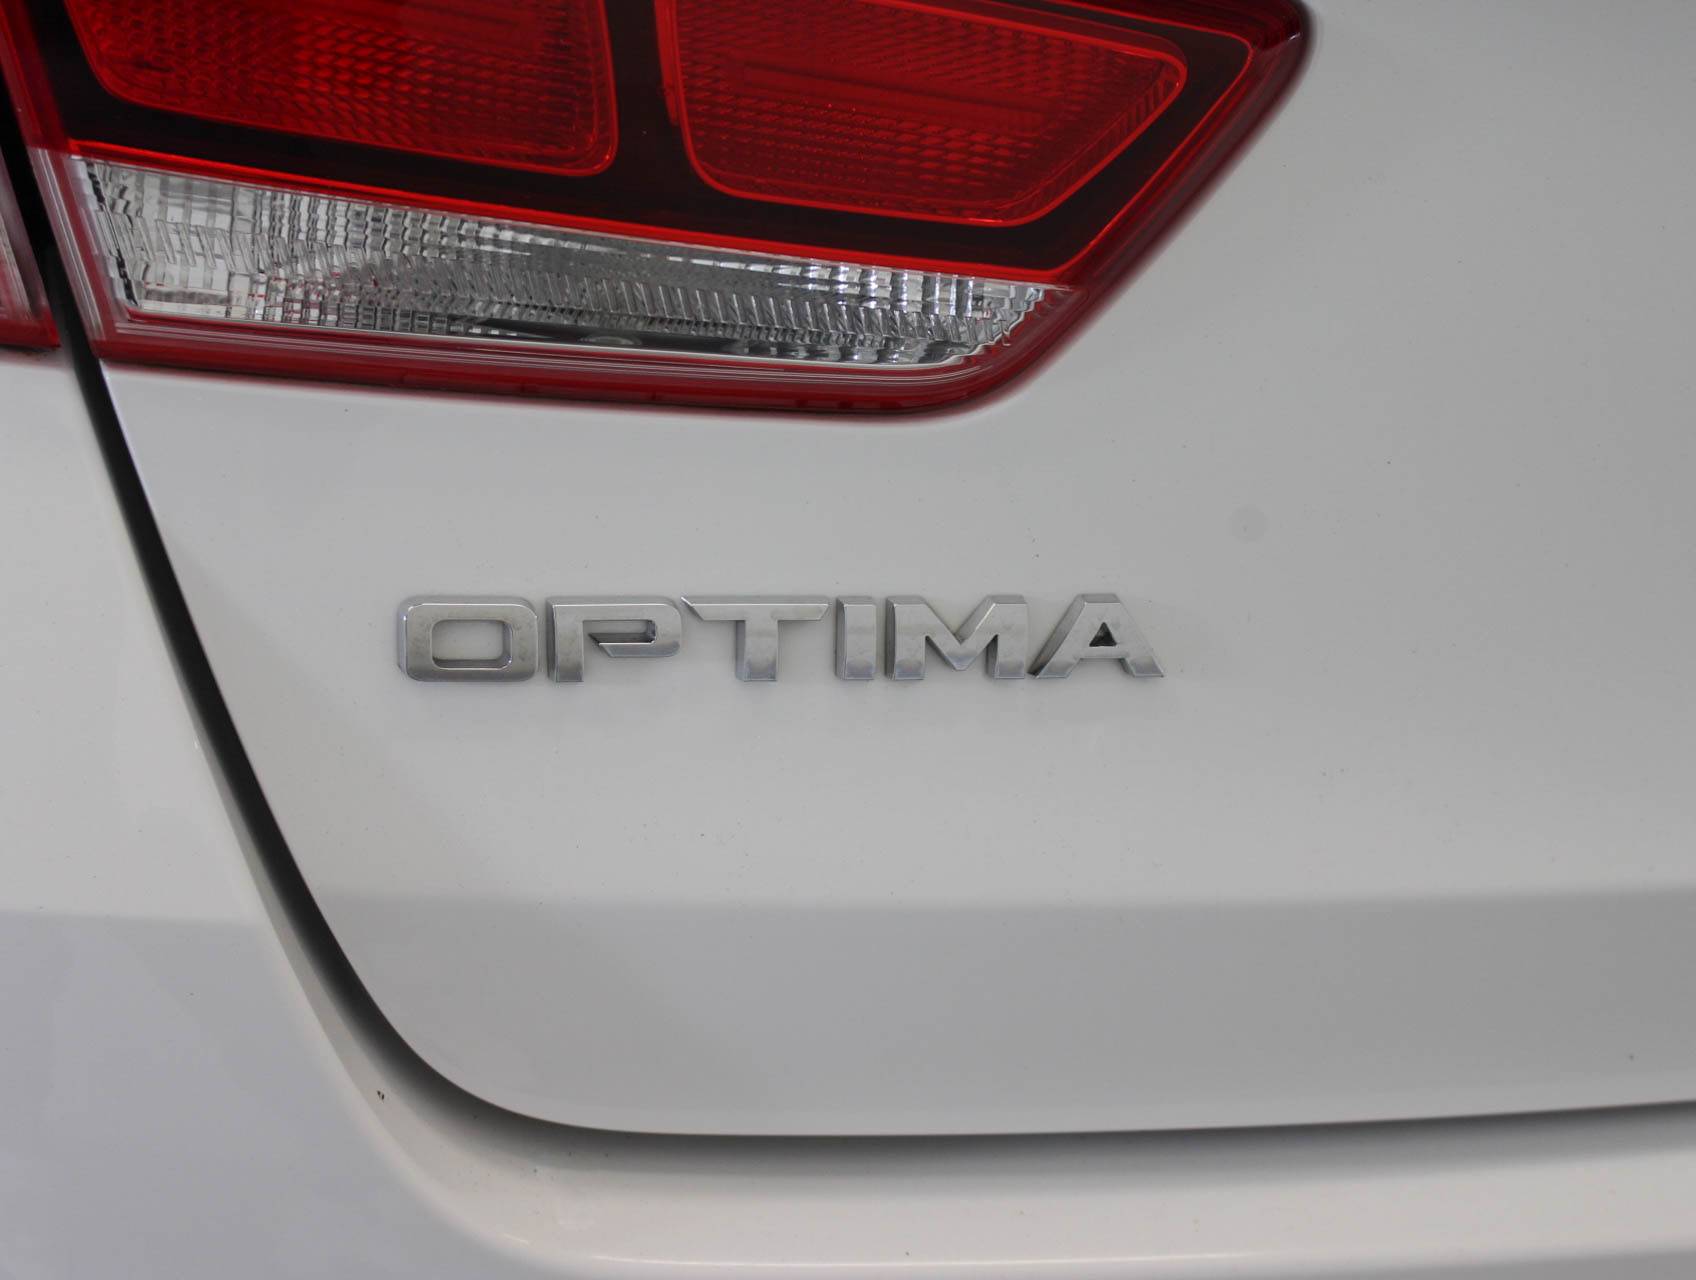 Florida Fine Cars - Used KIA OPTIMA 2017 MARGATE LX